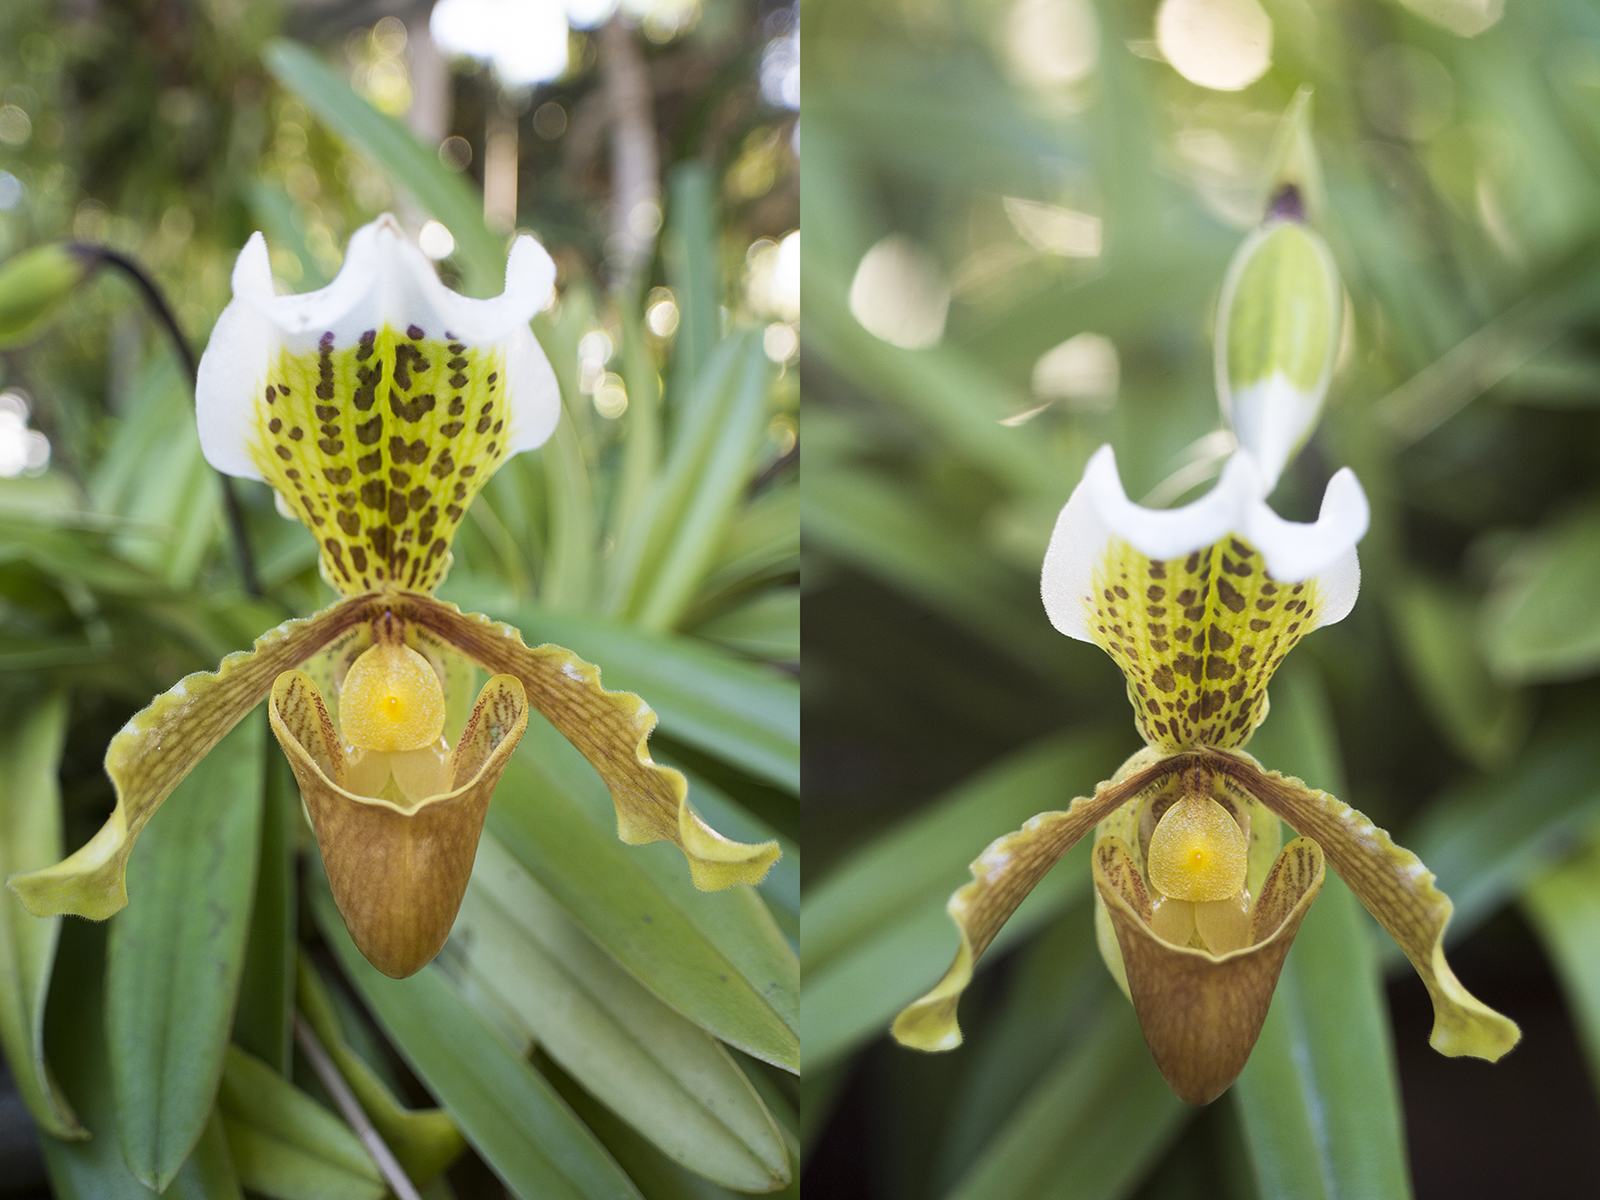 Orchidee met wide-angle (links) en 58mm (rechts).